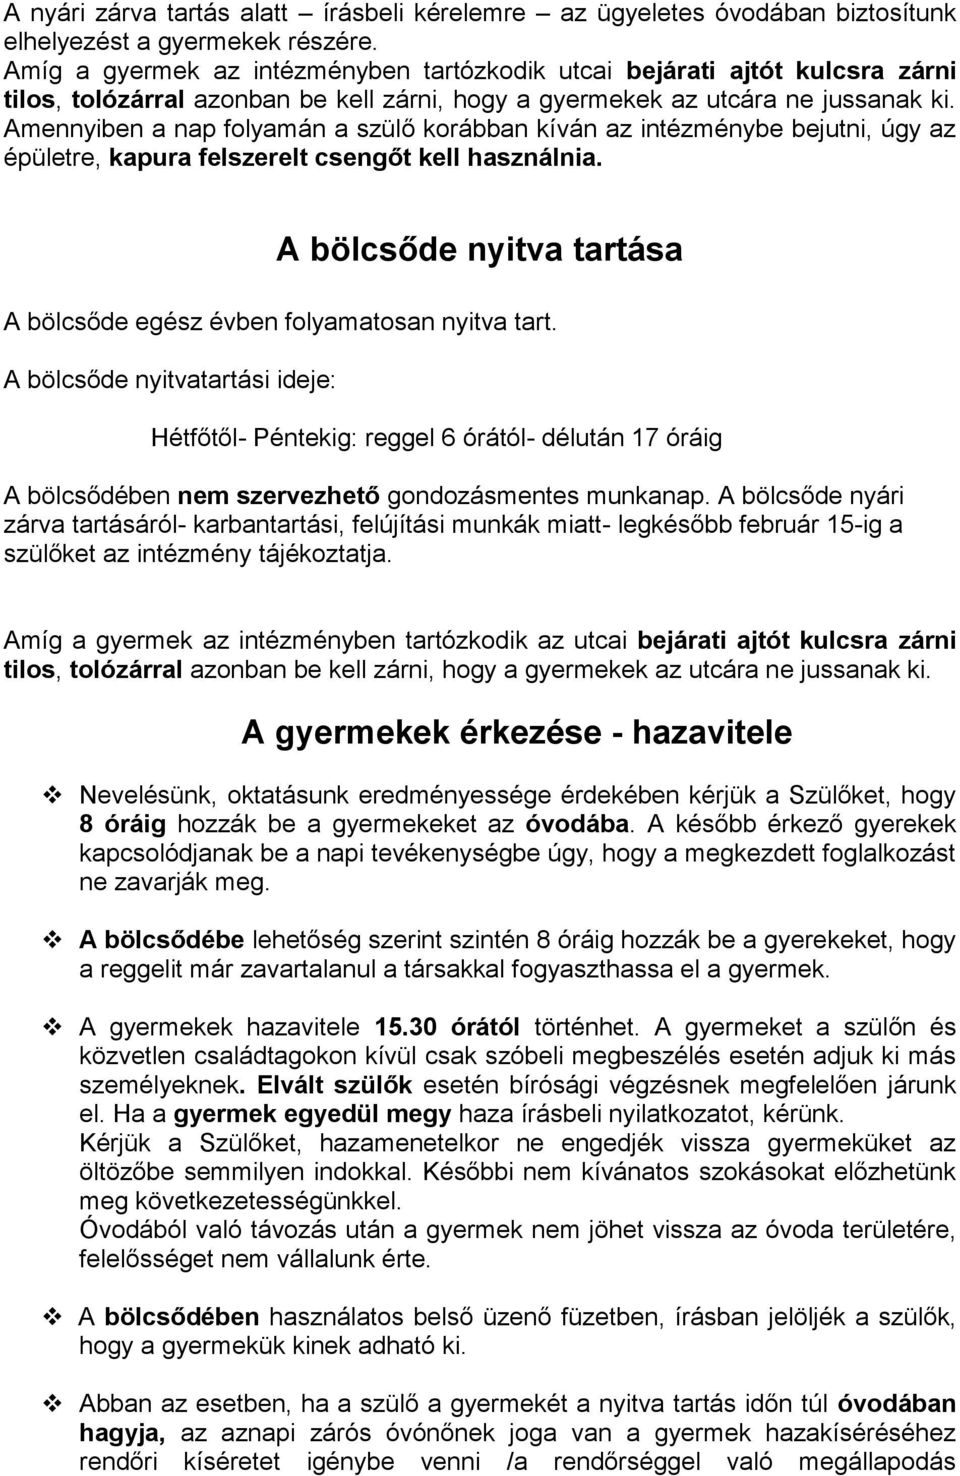 Egyesített Óvoda és Bölcsőde Intézmény 4060 Balmazújváros, Kossuth u. 19.,  fax: 52/ Kedves Szülők! - PDF Free Download